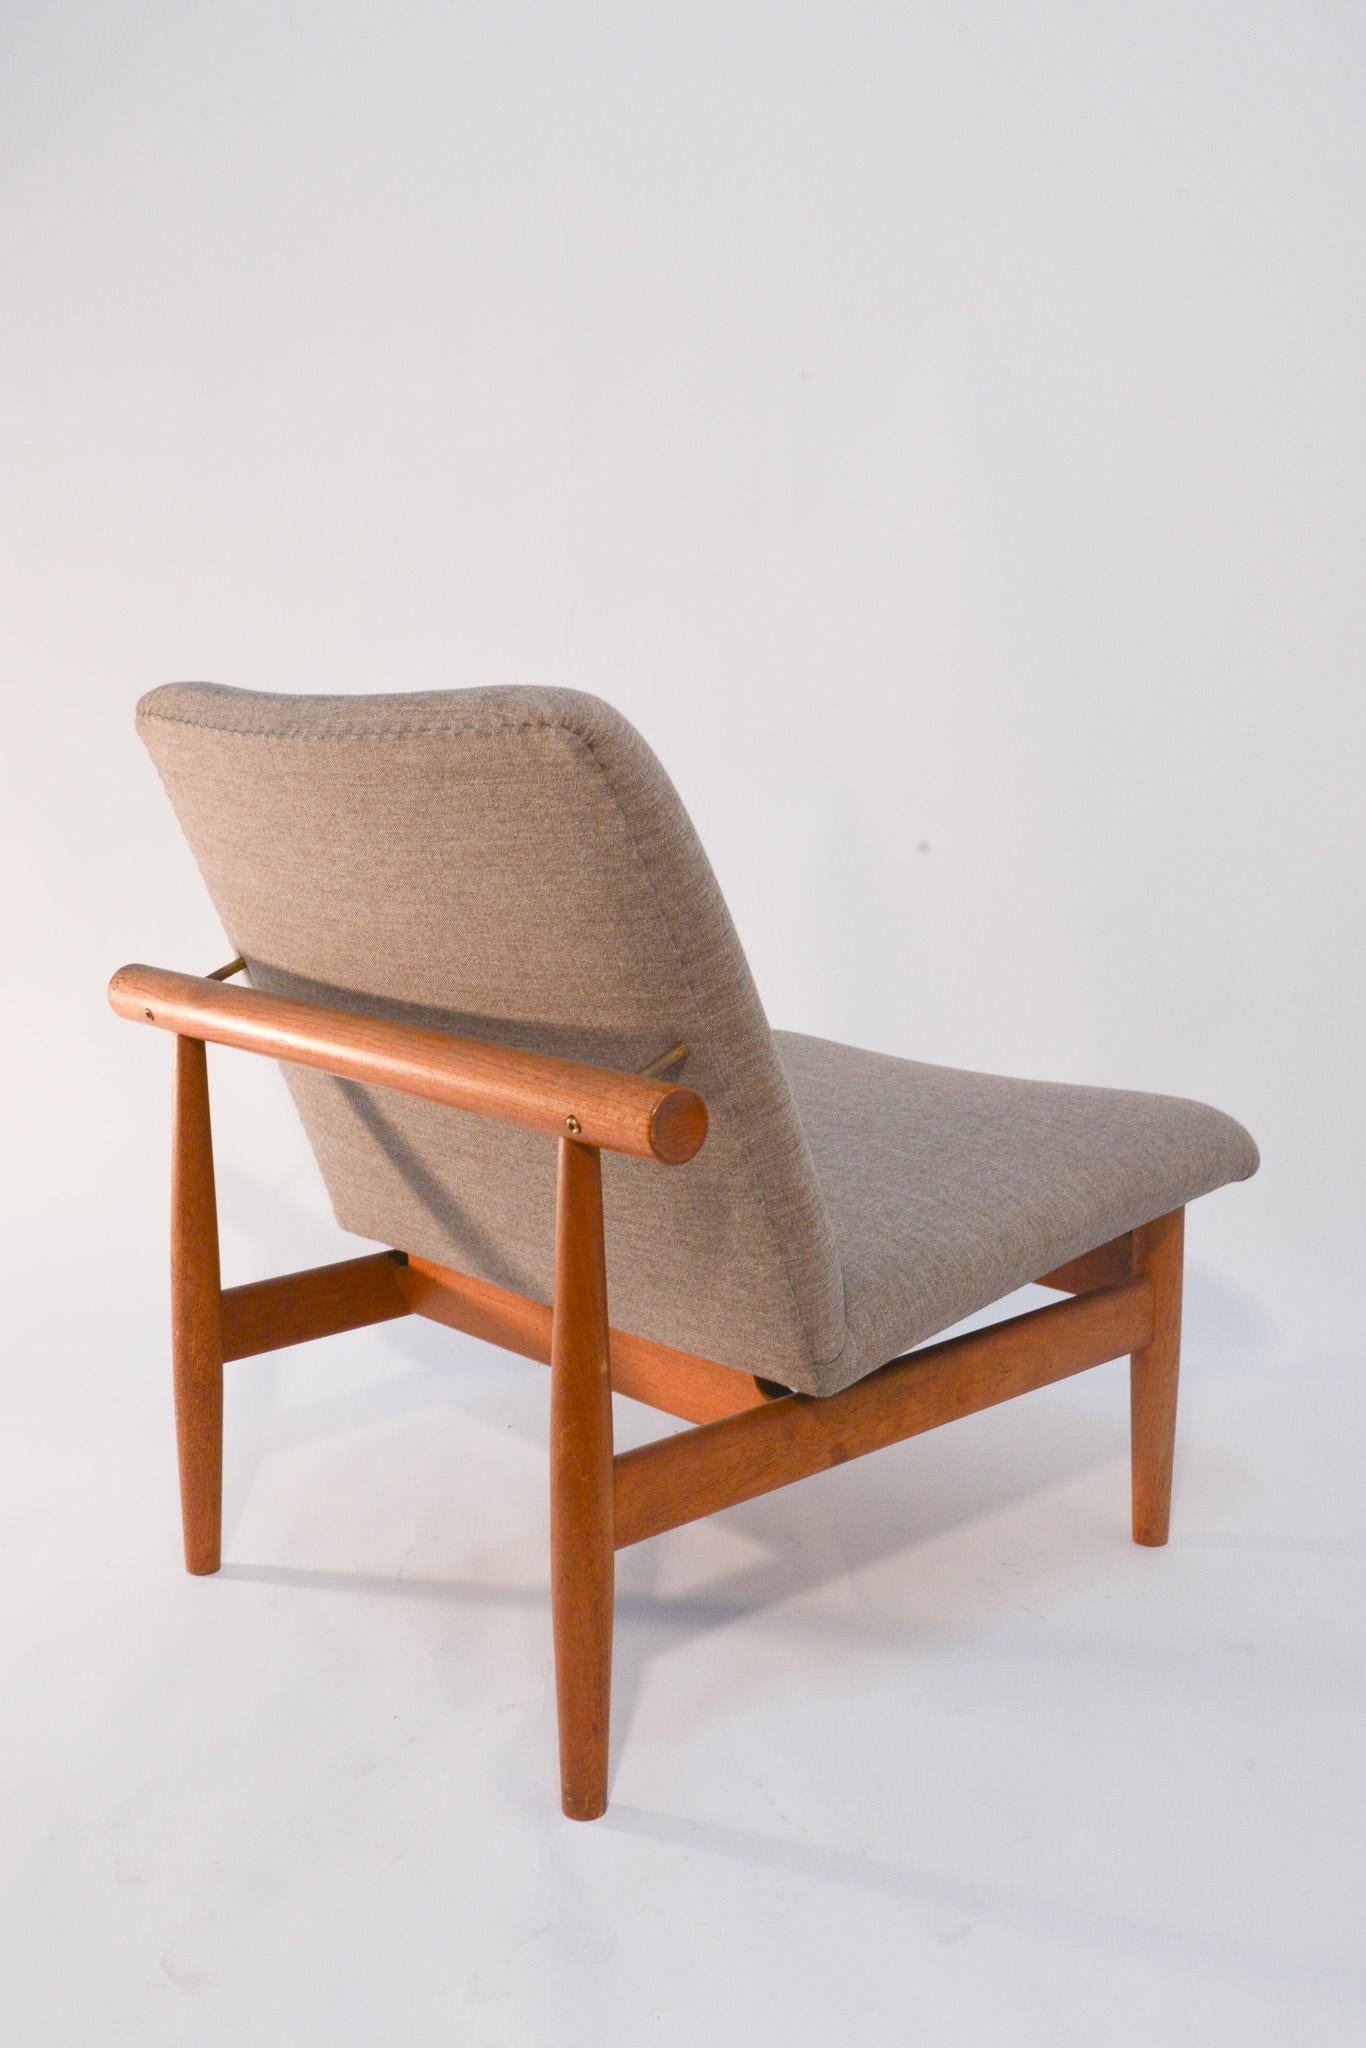 Dieser ikonische Stuhl wurde 1957 von Finn Juhl entworfen und 2007 neu aufgelegt. Der Stuhl ist Teil von Juhls Japan-Linie und ist von traditionellen japanischen Bautechniken inspiriert. Seine schlichte Form besteht aus Massivholz und